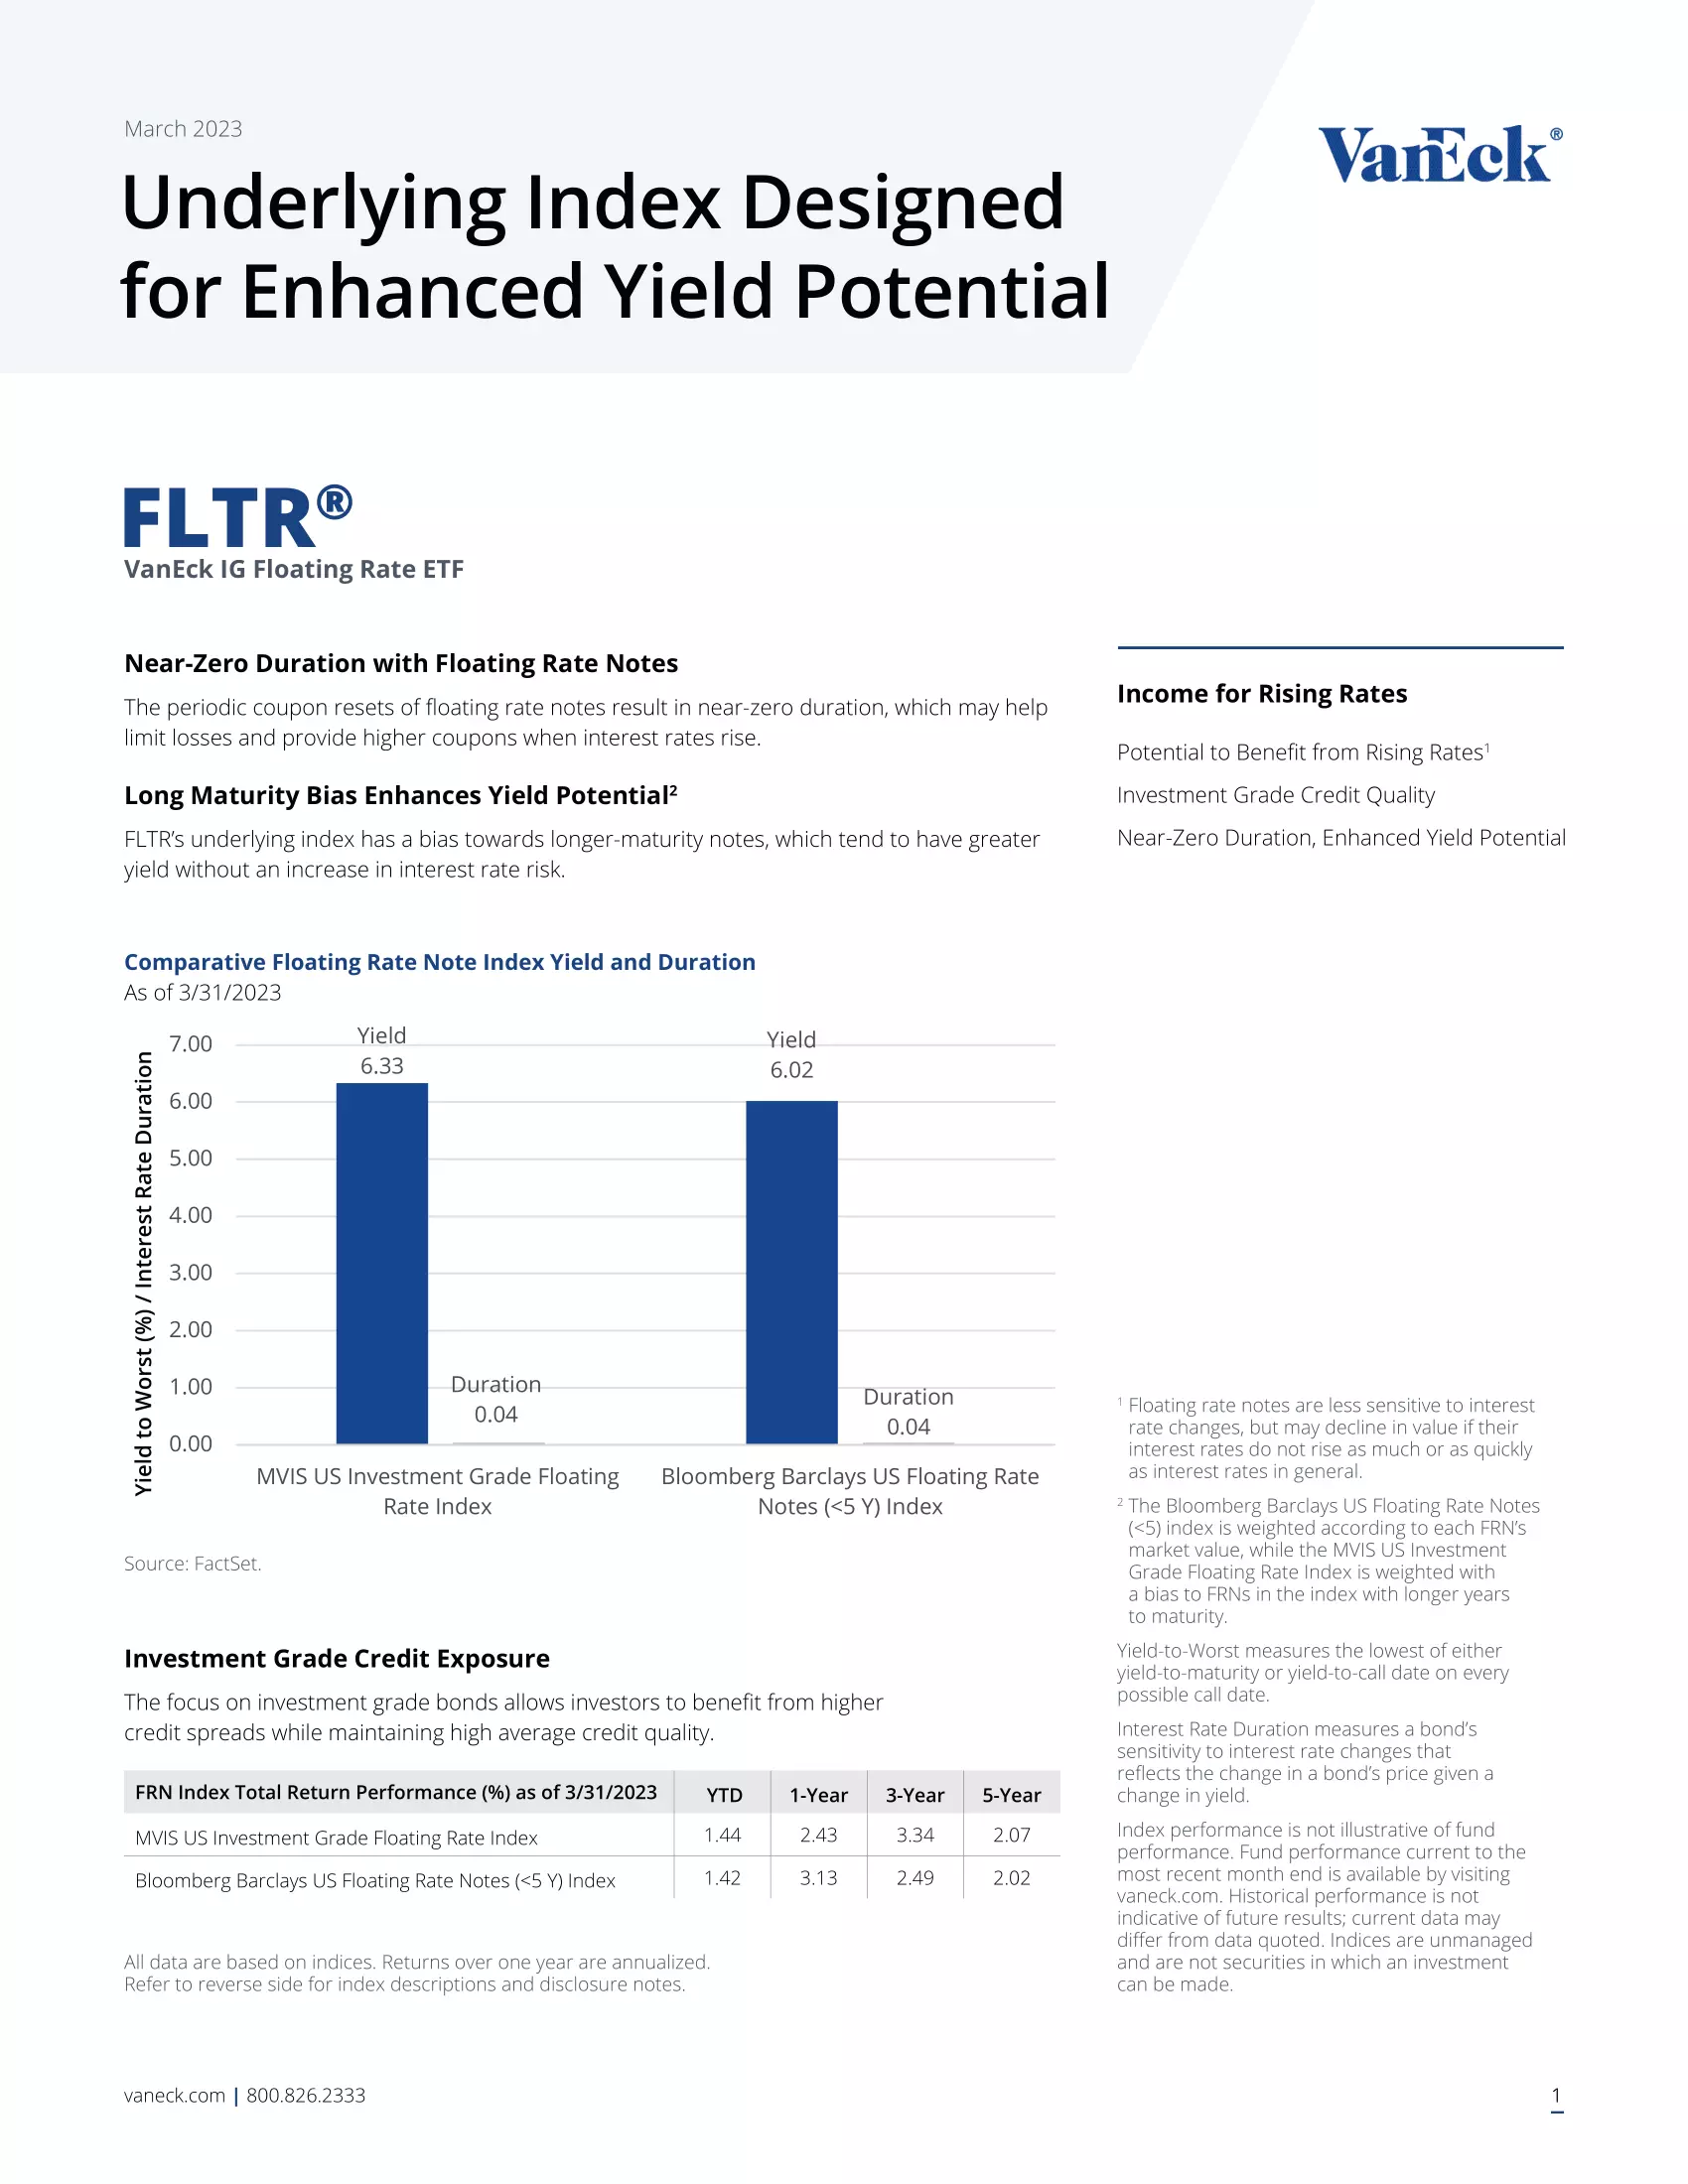 FLTR: VanEck IG Floating Rate ETF